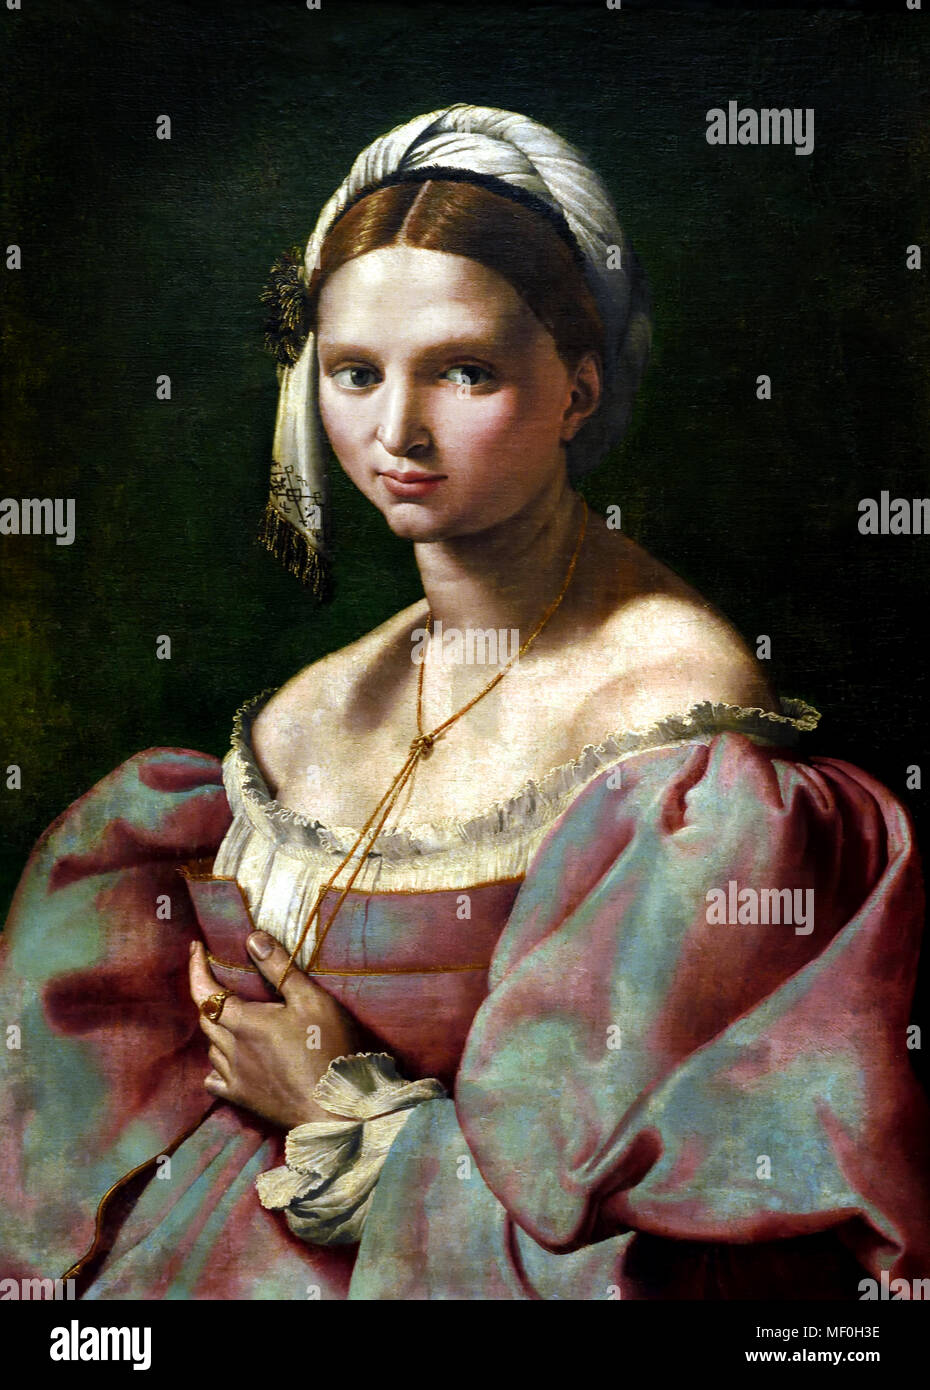 Porträt einer jungen Frau von Giuliano Bugiardini 1475-1555), italienischer Maler, der späten Renaissance und Manierismus bekannt. Florenz (Porträt einer jungen Frau, die an der Velata del Raffaello gestorben und durch die Anwesenheit von einer Schnur verknotet am Hals und mit dem Daumen der linken Hand gestreckt Unterschieden) Italienisch - Italien. Stockfoto